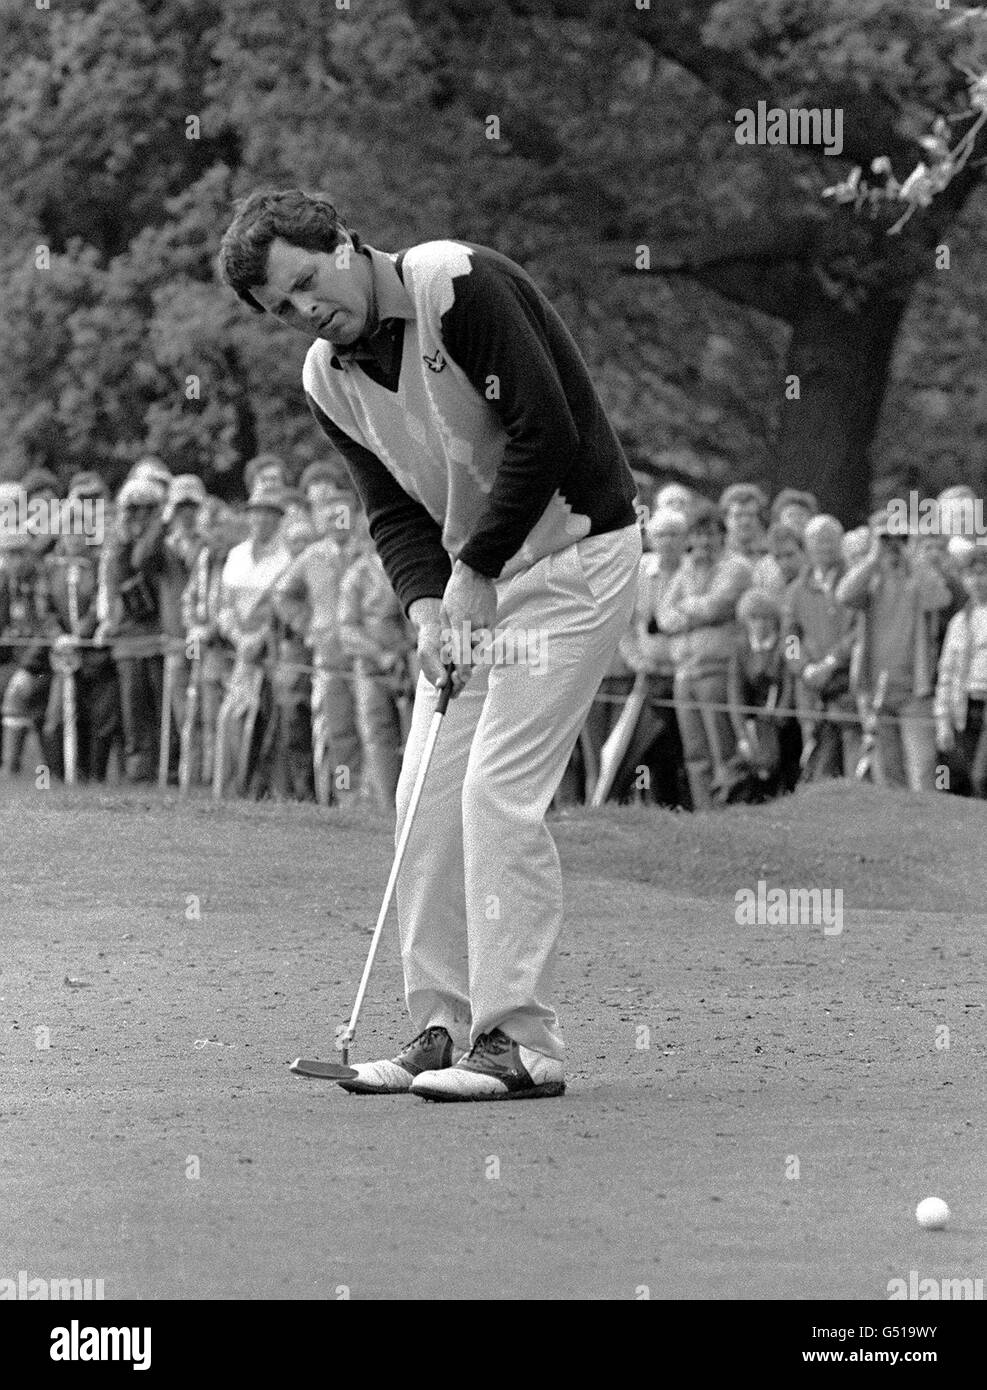 Bernard Gallacher 1983.Le golfeur Bernard Gallacher en action sur le vert de mise en 1983. Banque D'Images